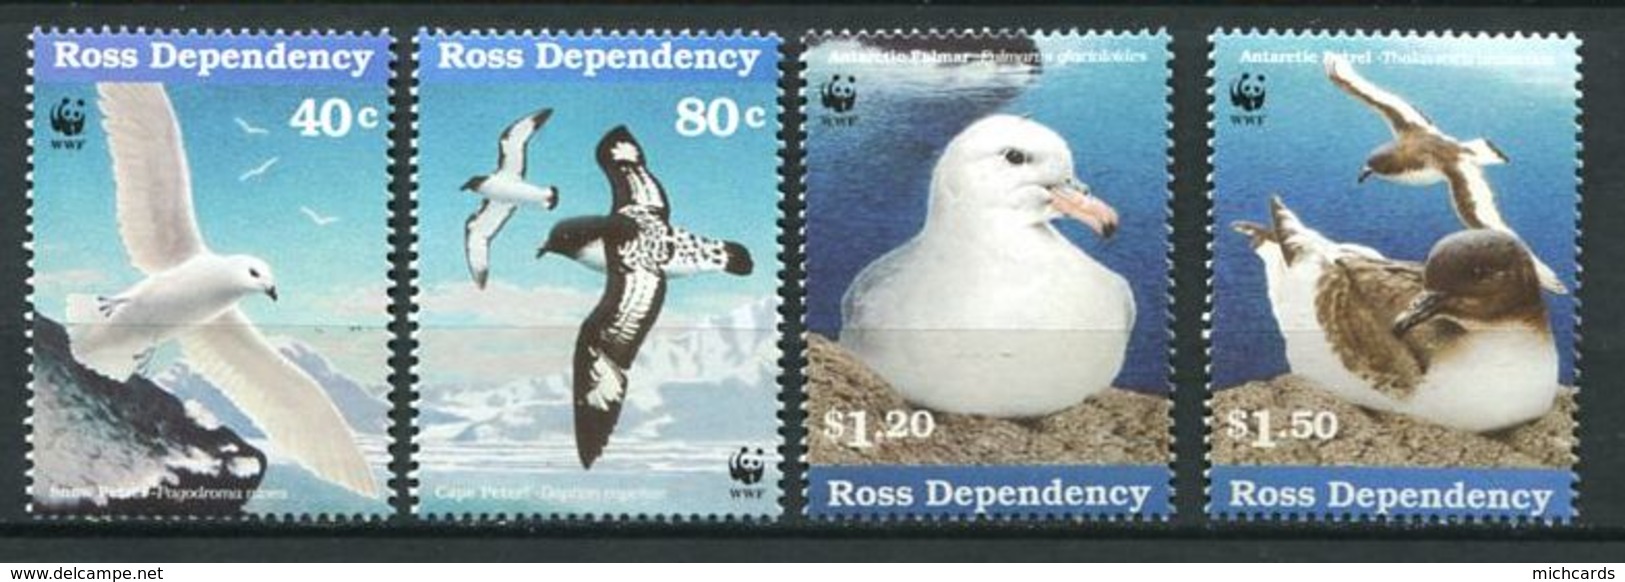 240 TERRE DE ROSS (Nle Zelande) 1997 - Yvert 56/59 - WWF Oiseau De Mer - Neuf ** (MNH) Sans Charniere - Unused Stamps